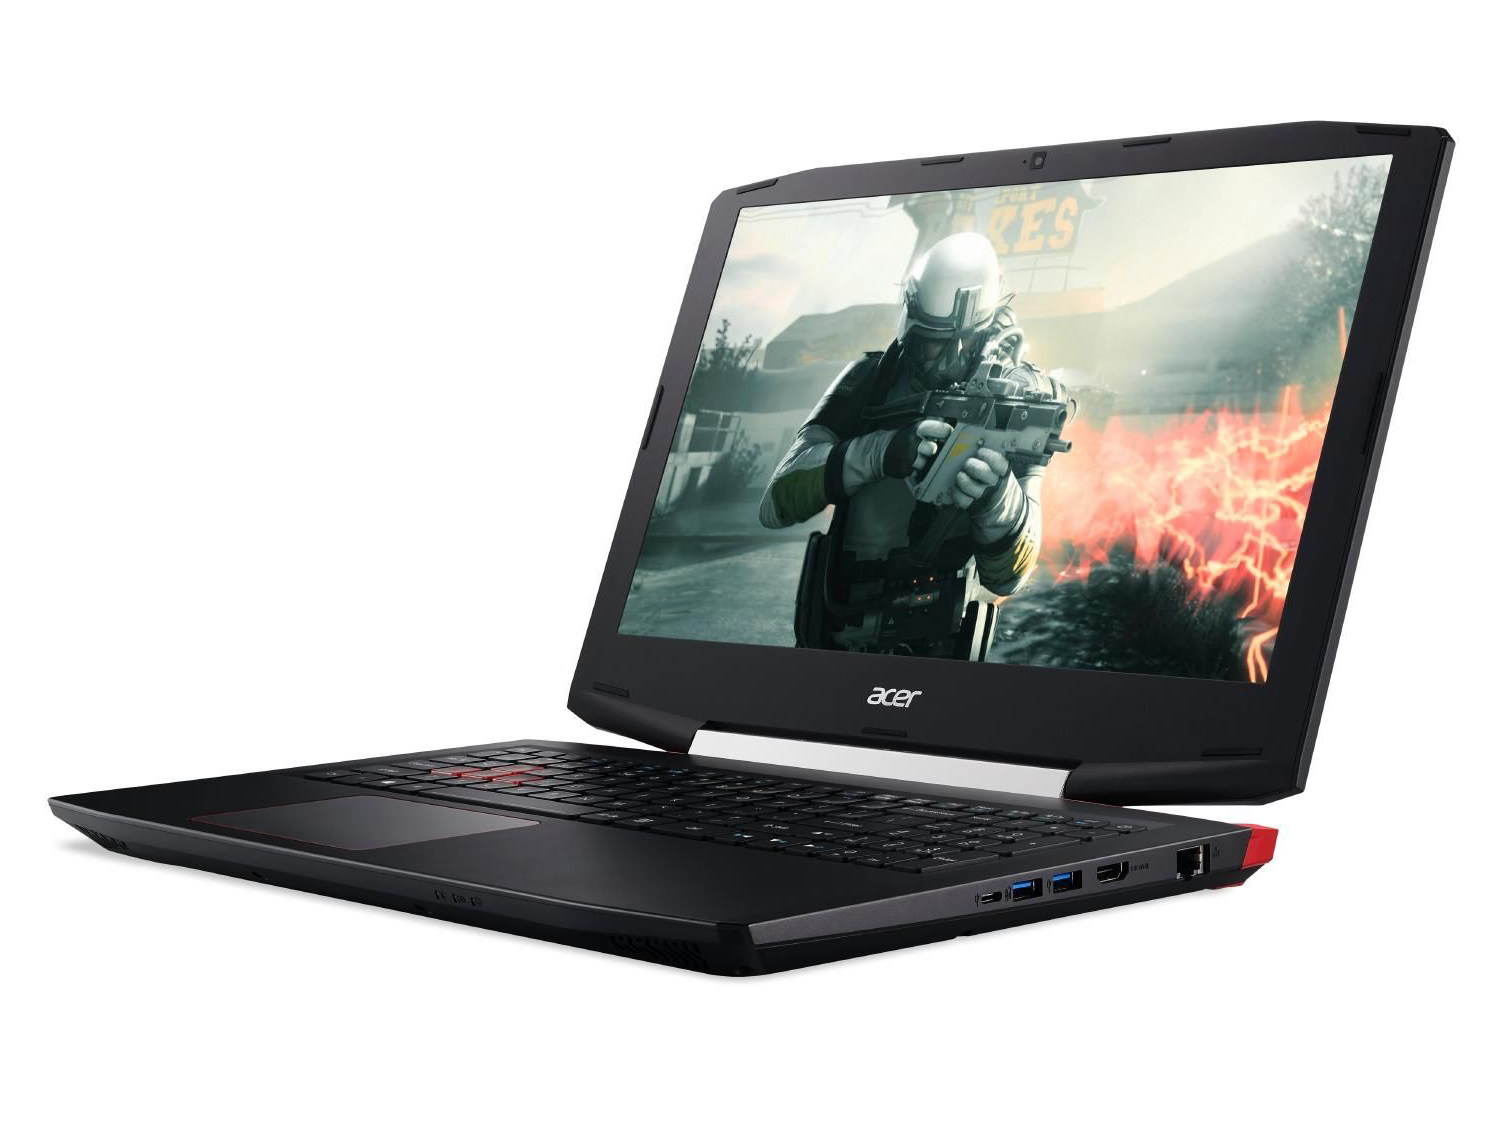 Acer Aspire VX 15 VX5-591G (7300HQ, GTX Full HD) Laptop Review -